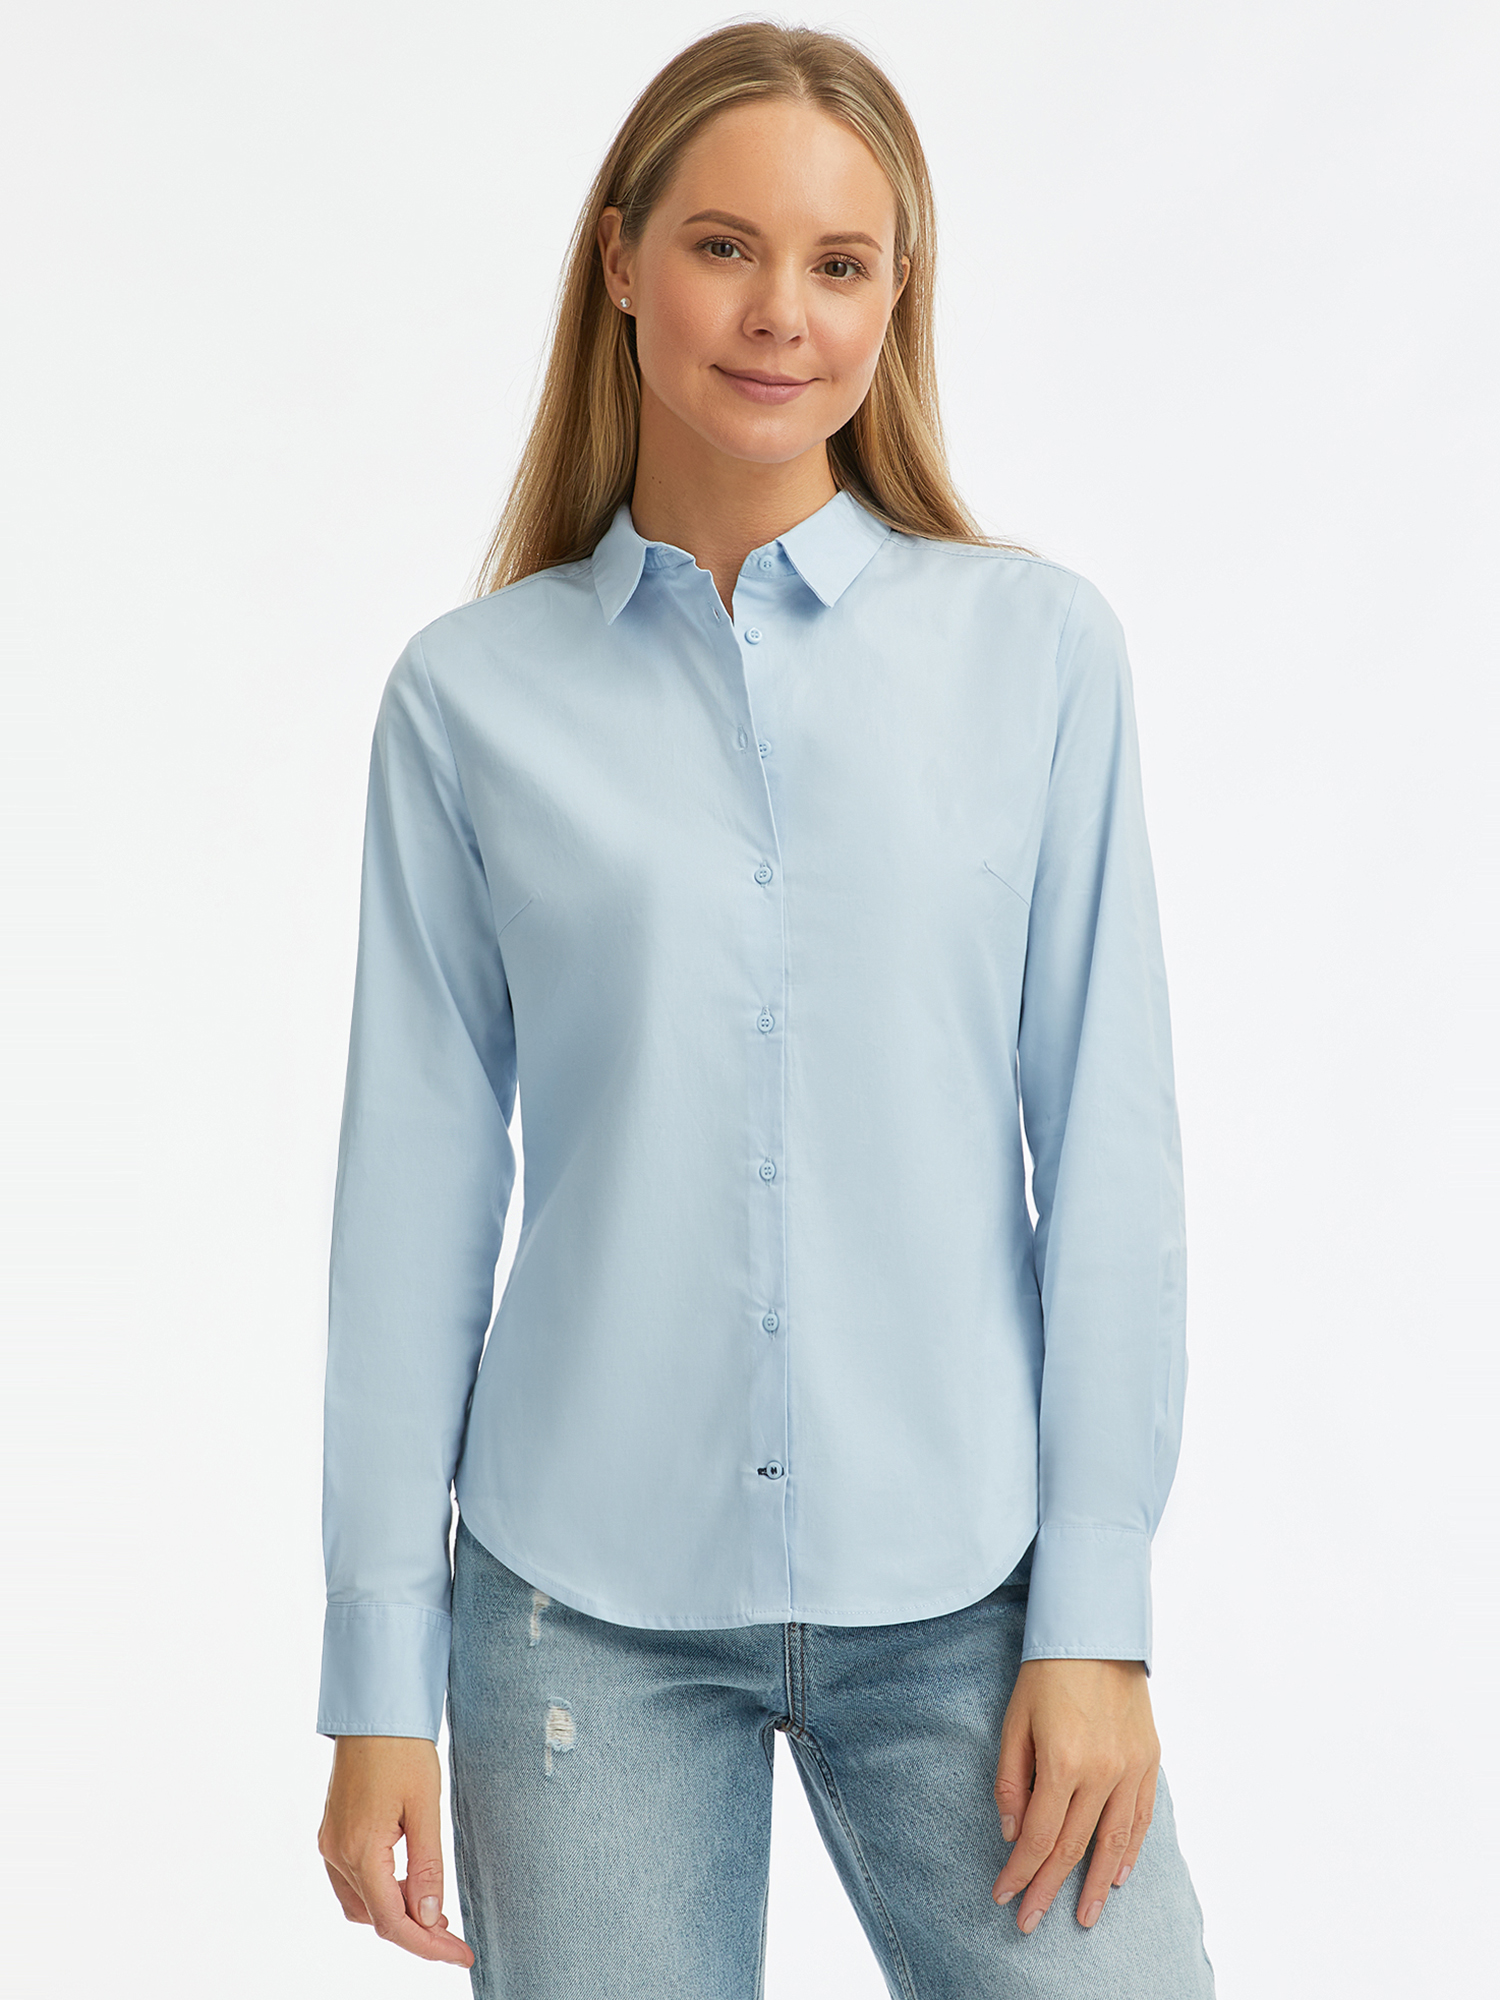 Рубашка женская oodji 13K03001-1B синяя 44 EU